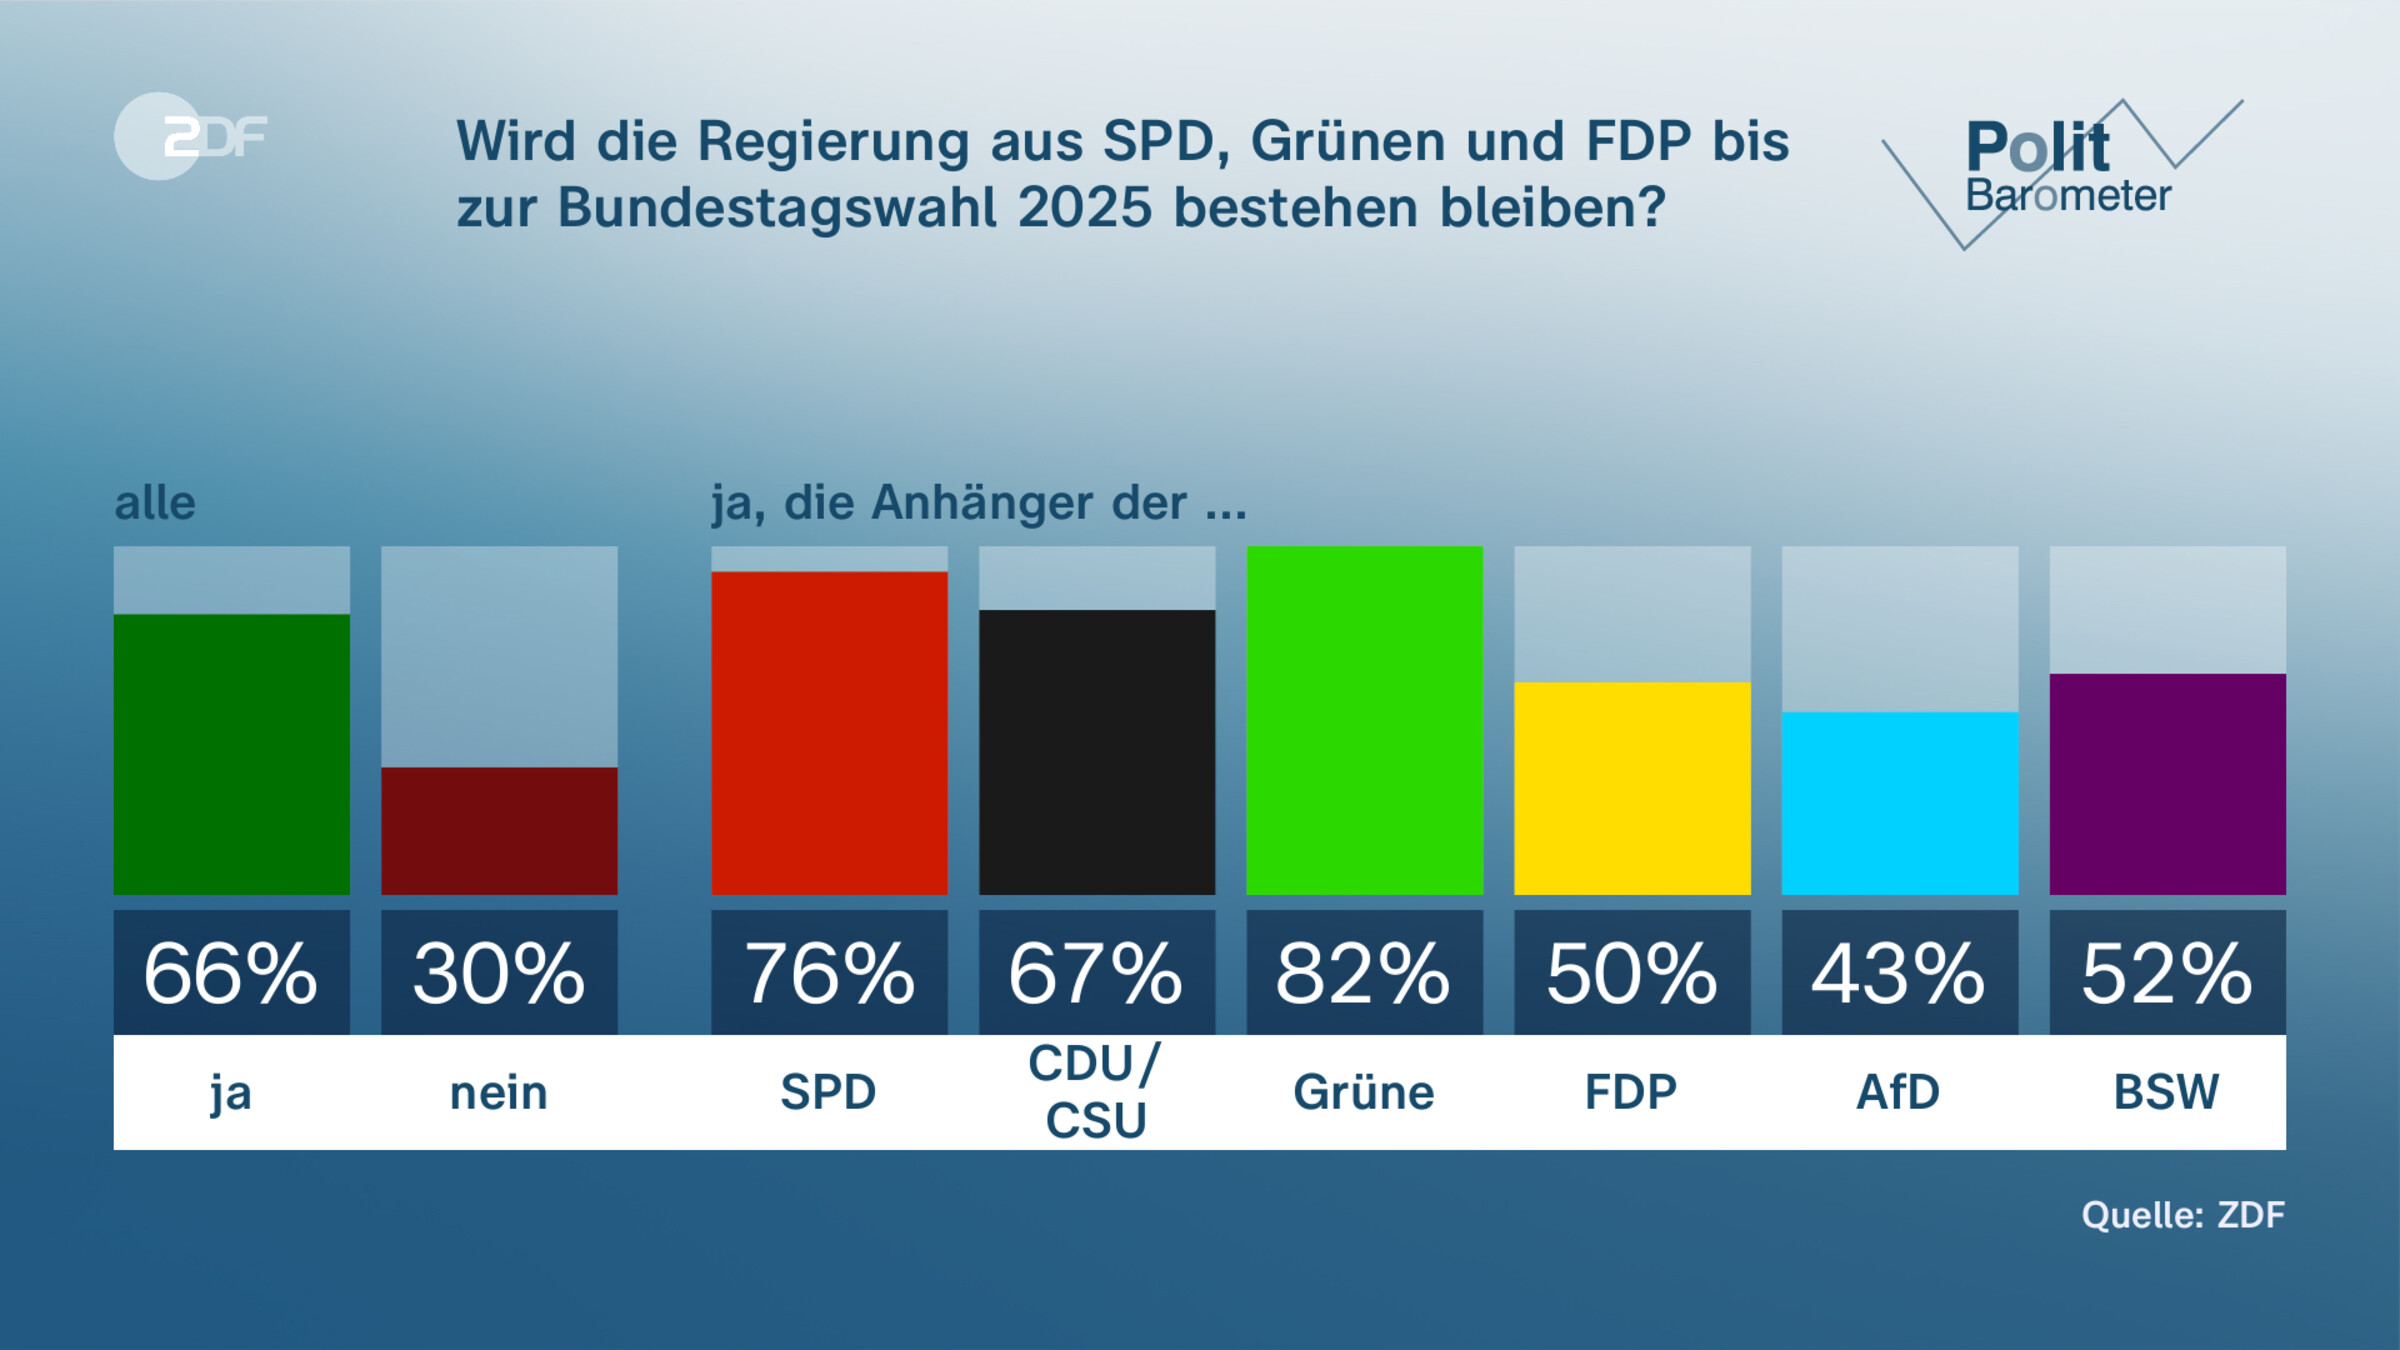 Wird die Regierung aus SPD, Grünen und FDP bis zur Bundestagswahl 2025 bestehen bleiben?